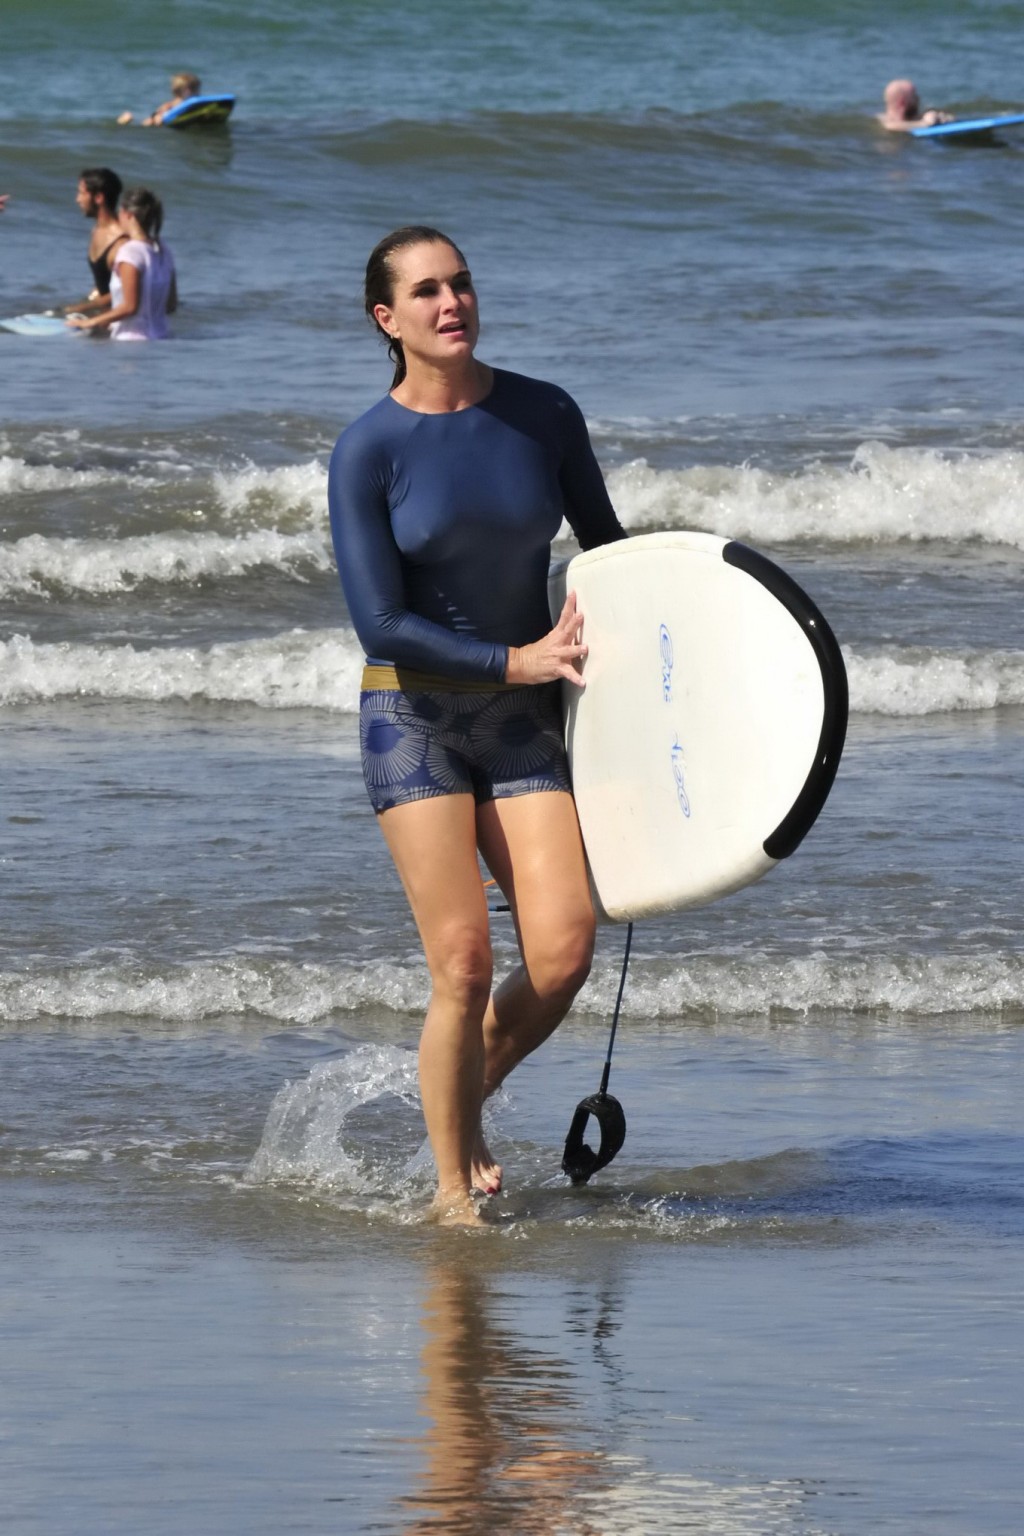 Brooke shields, seins nus, montre ses tétons en surfant sur la plage de Cos.
 #75169684